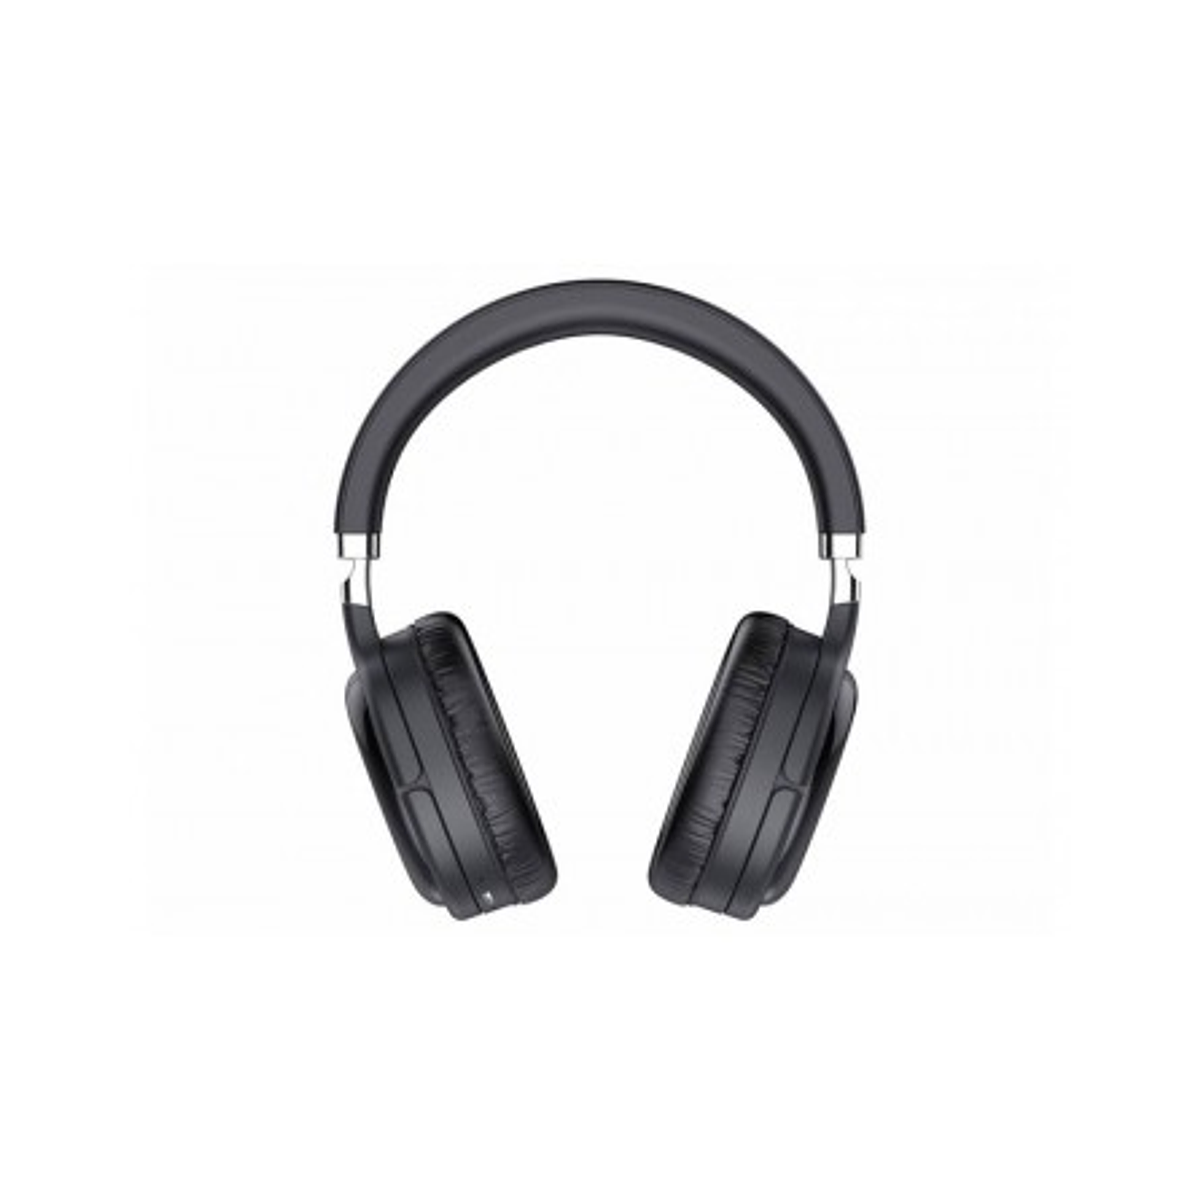 Auriculares Bluetooth Telefunken H-800ANC con Cancelación Activa de Ruido  Over Ear